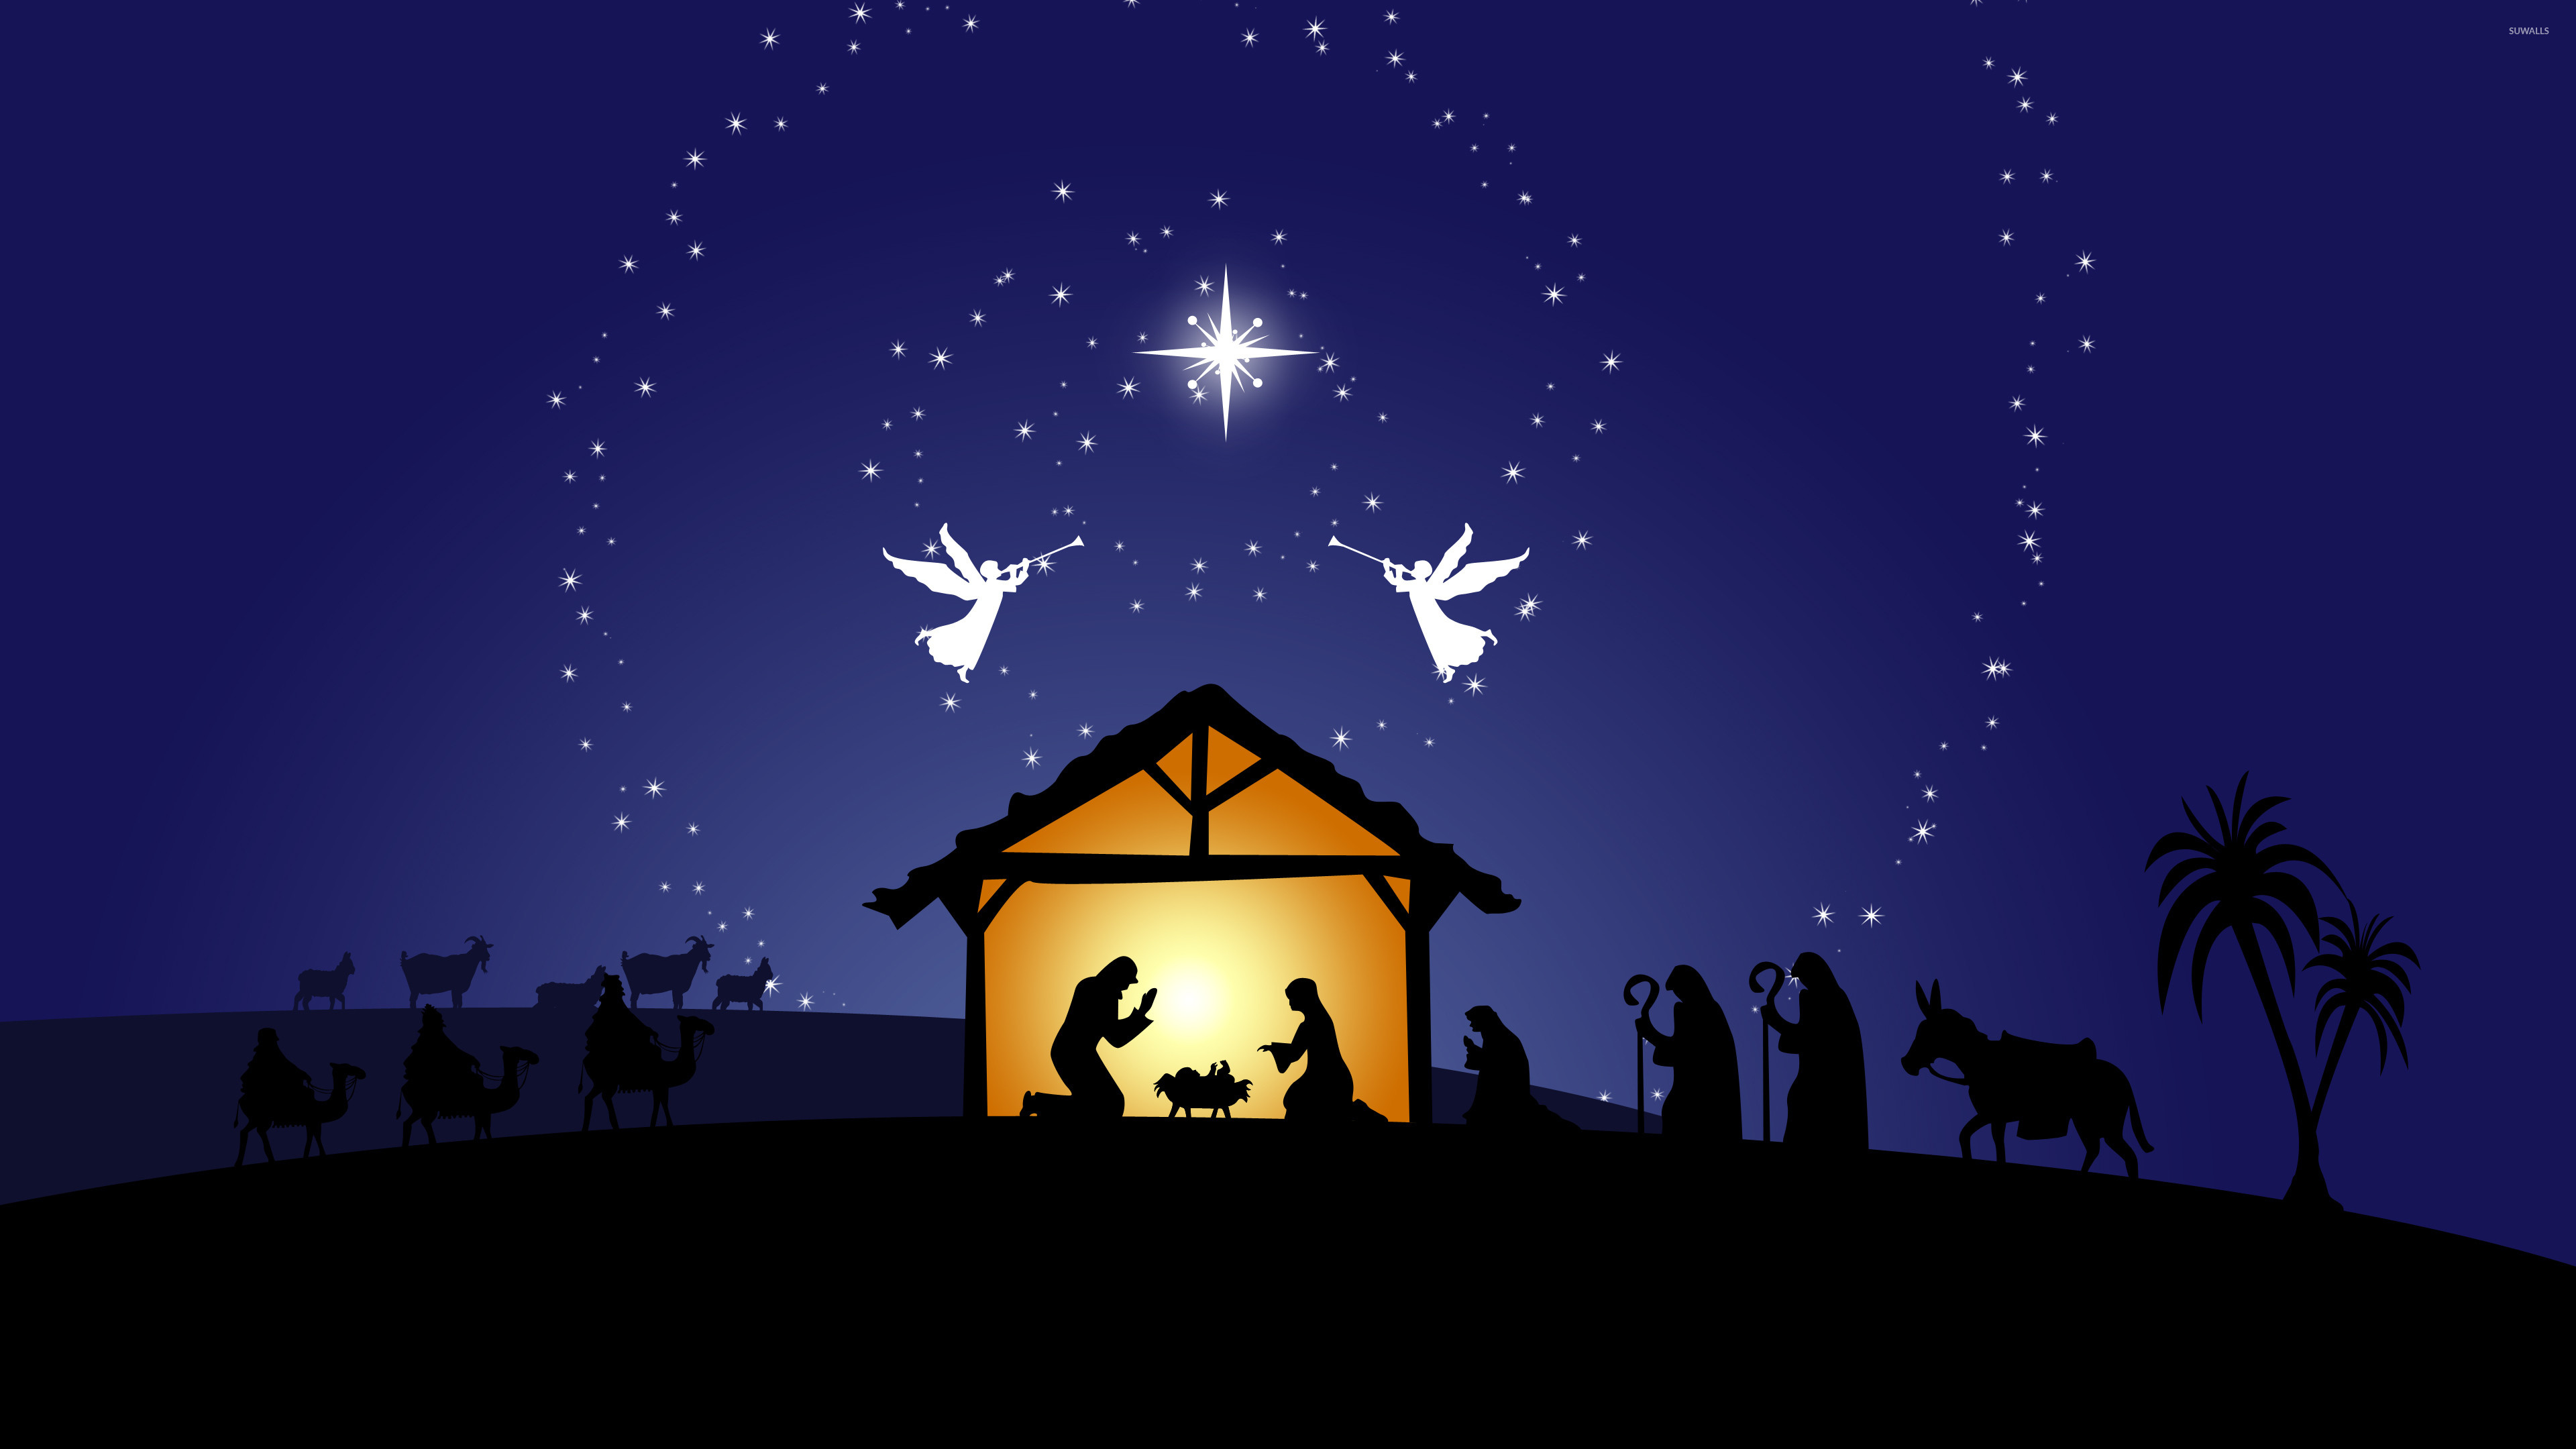 nativity scene backdrop